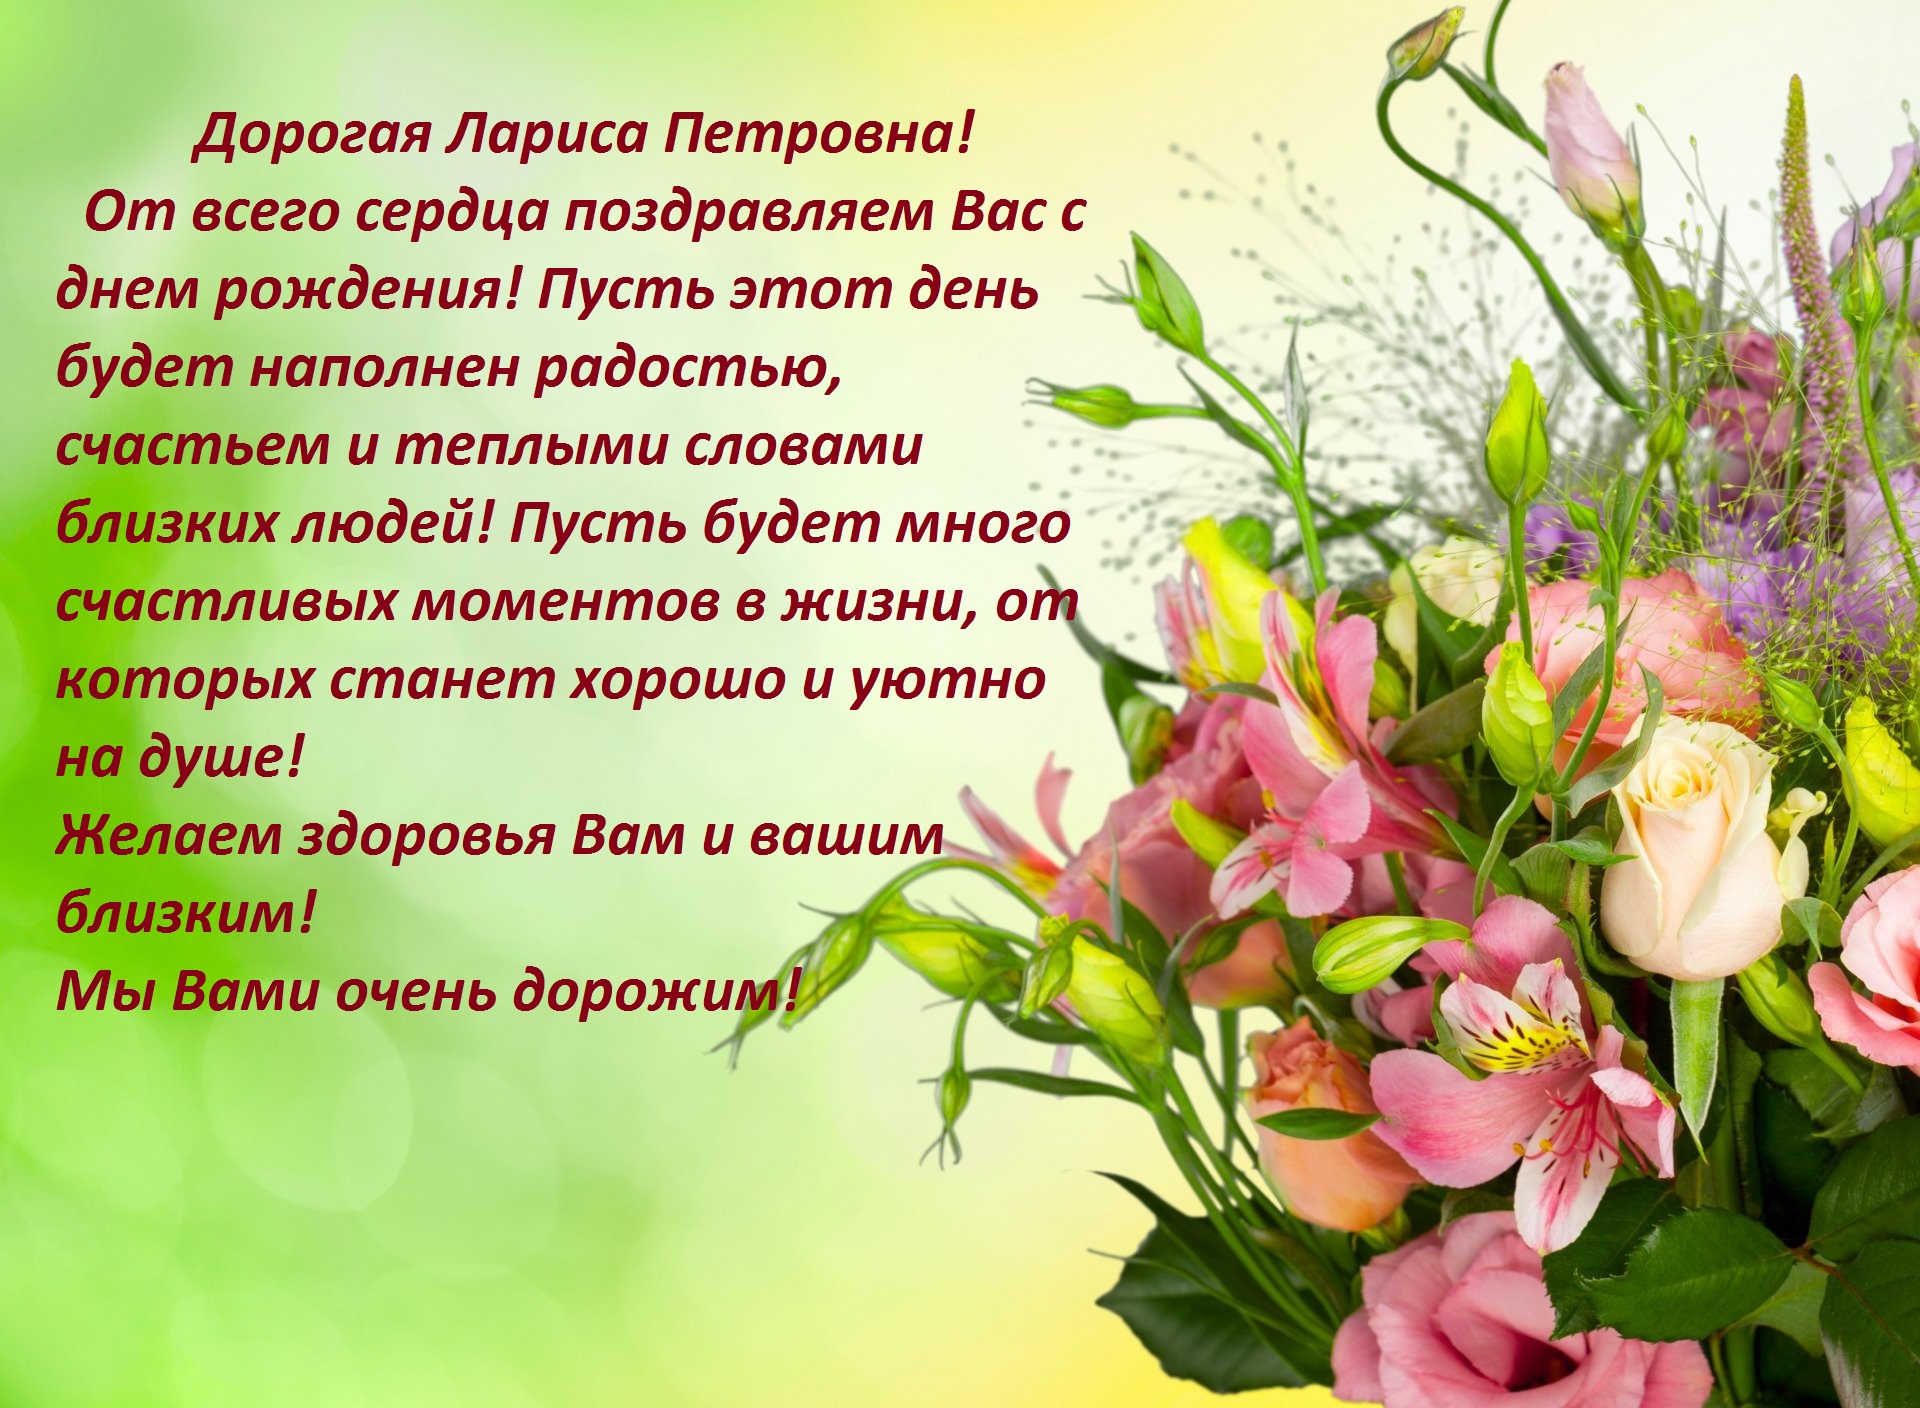 Сегодня, 15 марта, день рождения Ларисы Петровны Тарнаевой, члена Совета нашей Школы.